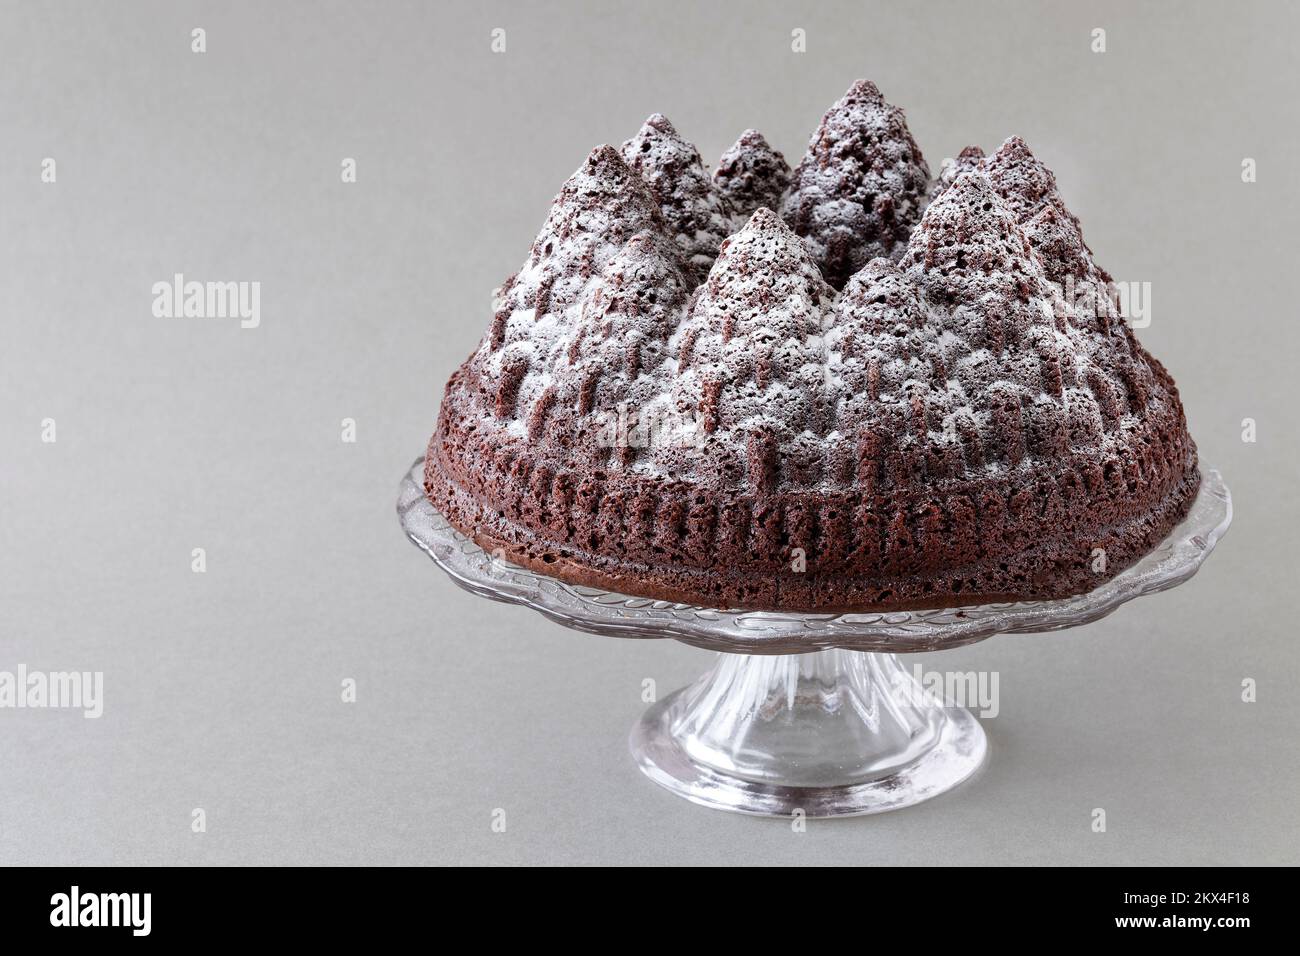 Un gâteau au chocolat de Noël festif. Le gâteau est fait à l'aide d'un moule Bundt pour former la pâte à gâteau dans les formes d'arbre. Une saupoudrez de sucre glace. Banque D'Images